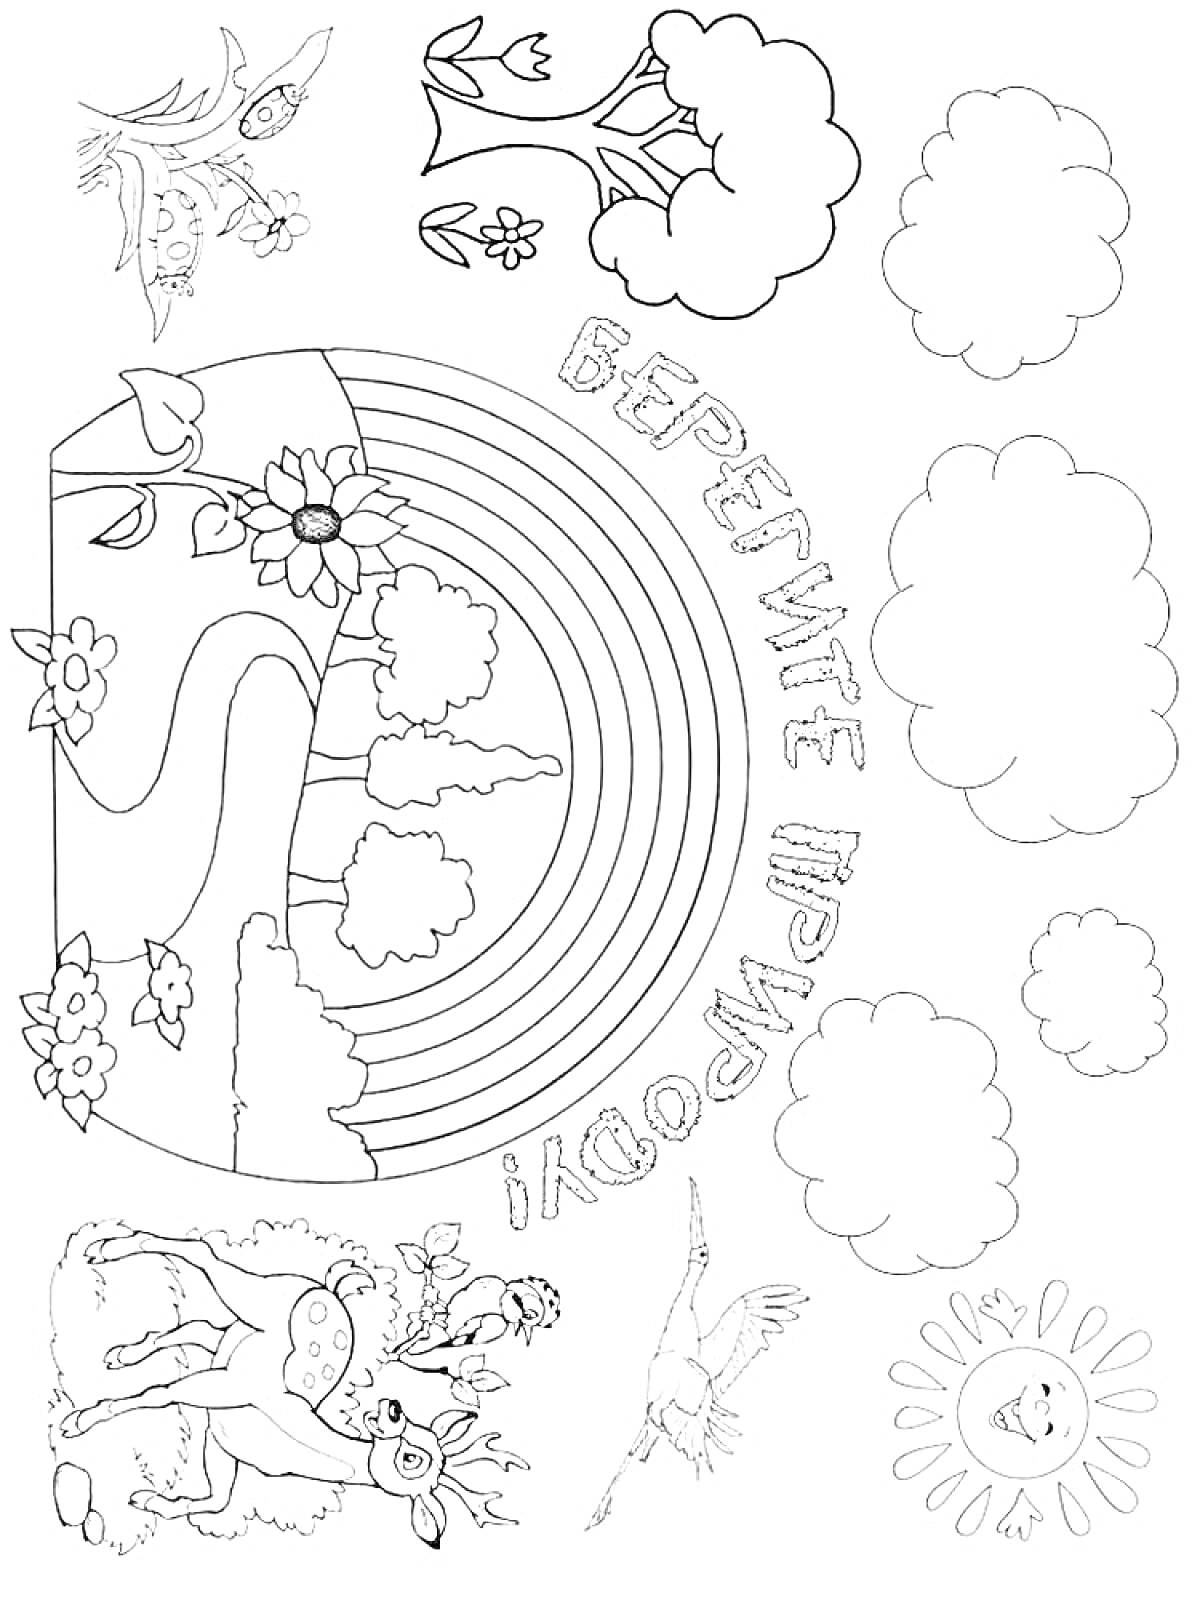 На раскраске изображено: Природа, Радуга, Облака, Деревья, Солнце, Цветы, Олень, Бабочка, Экология, Защита природы, Птица